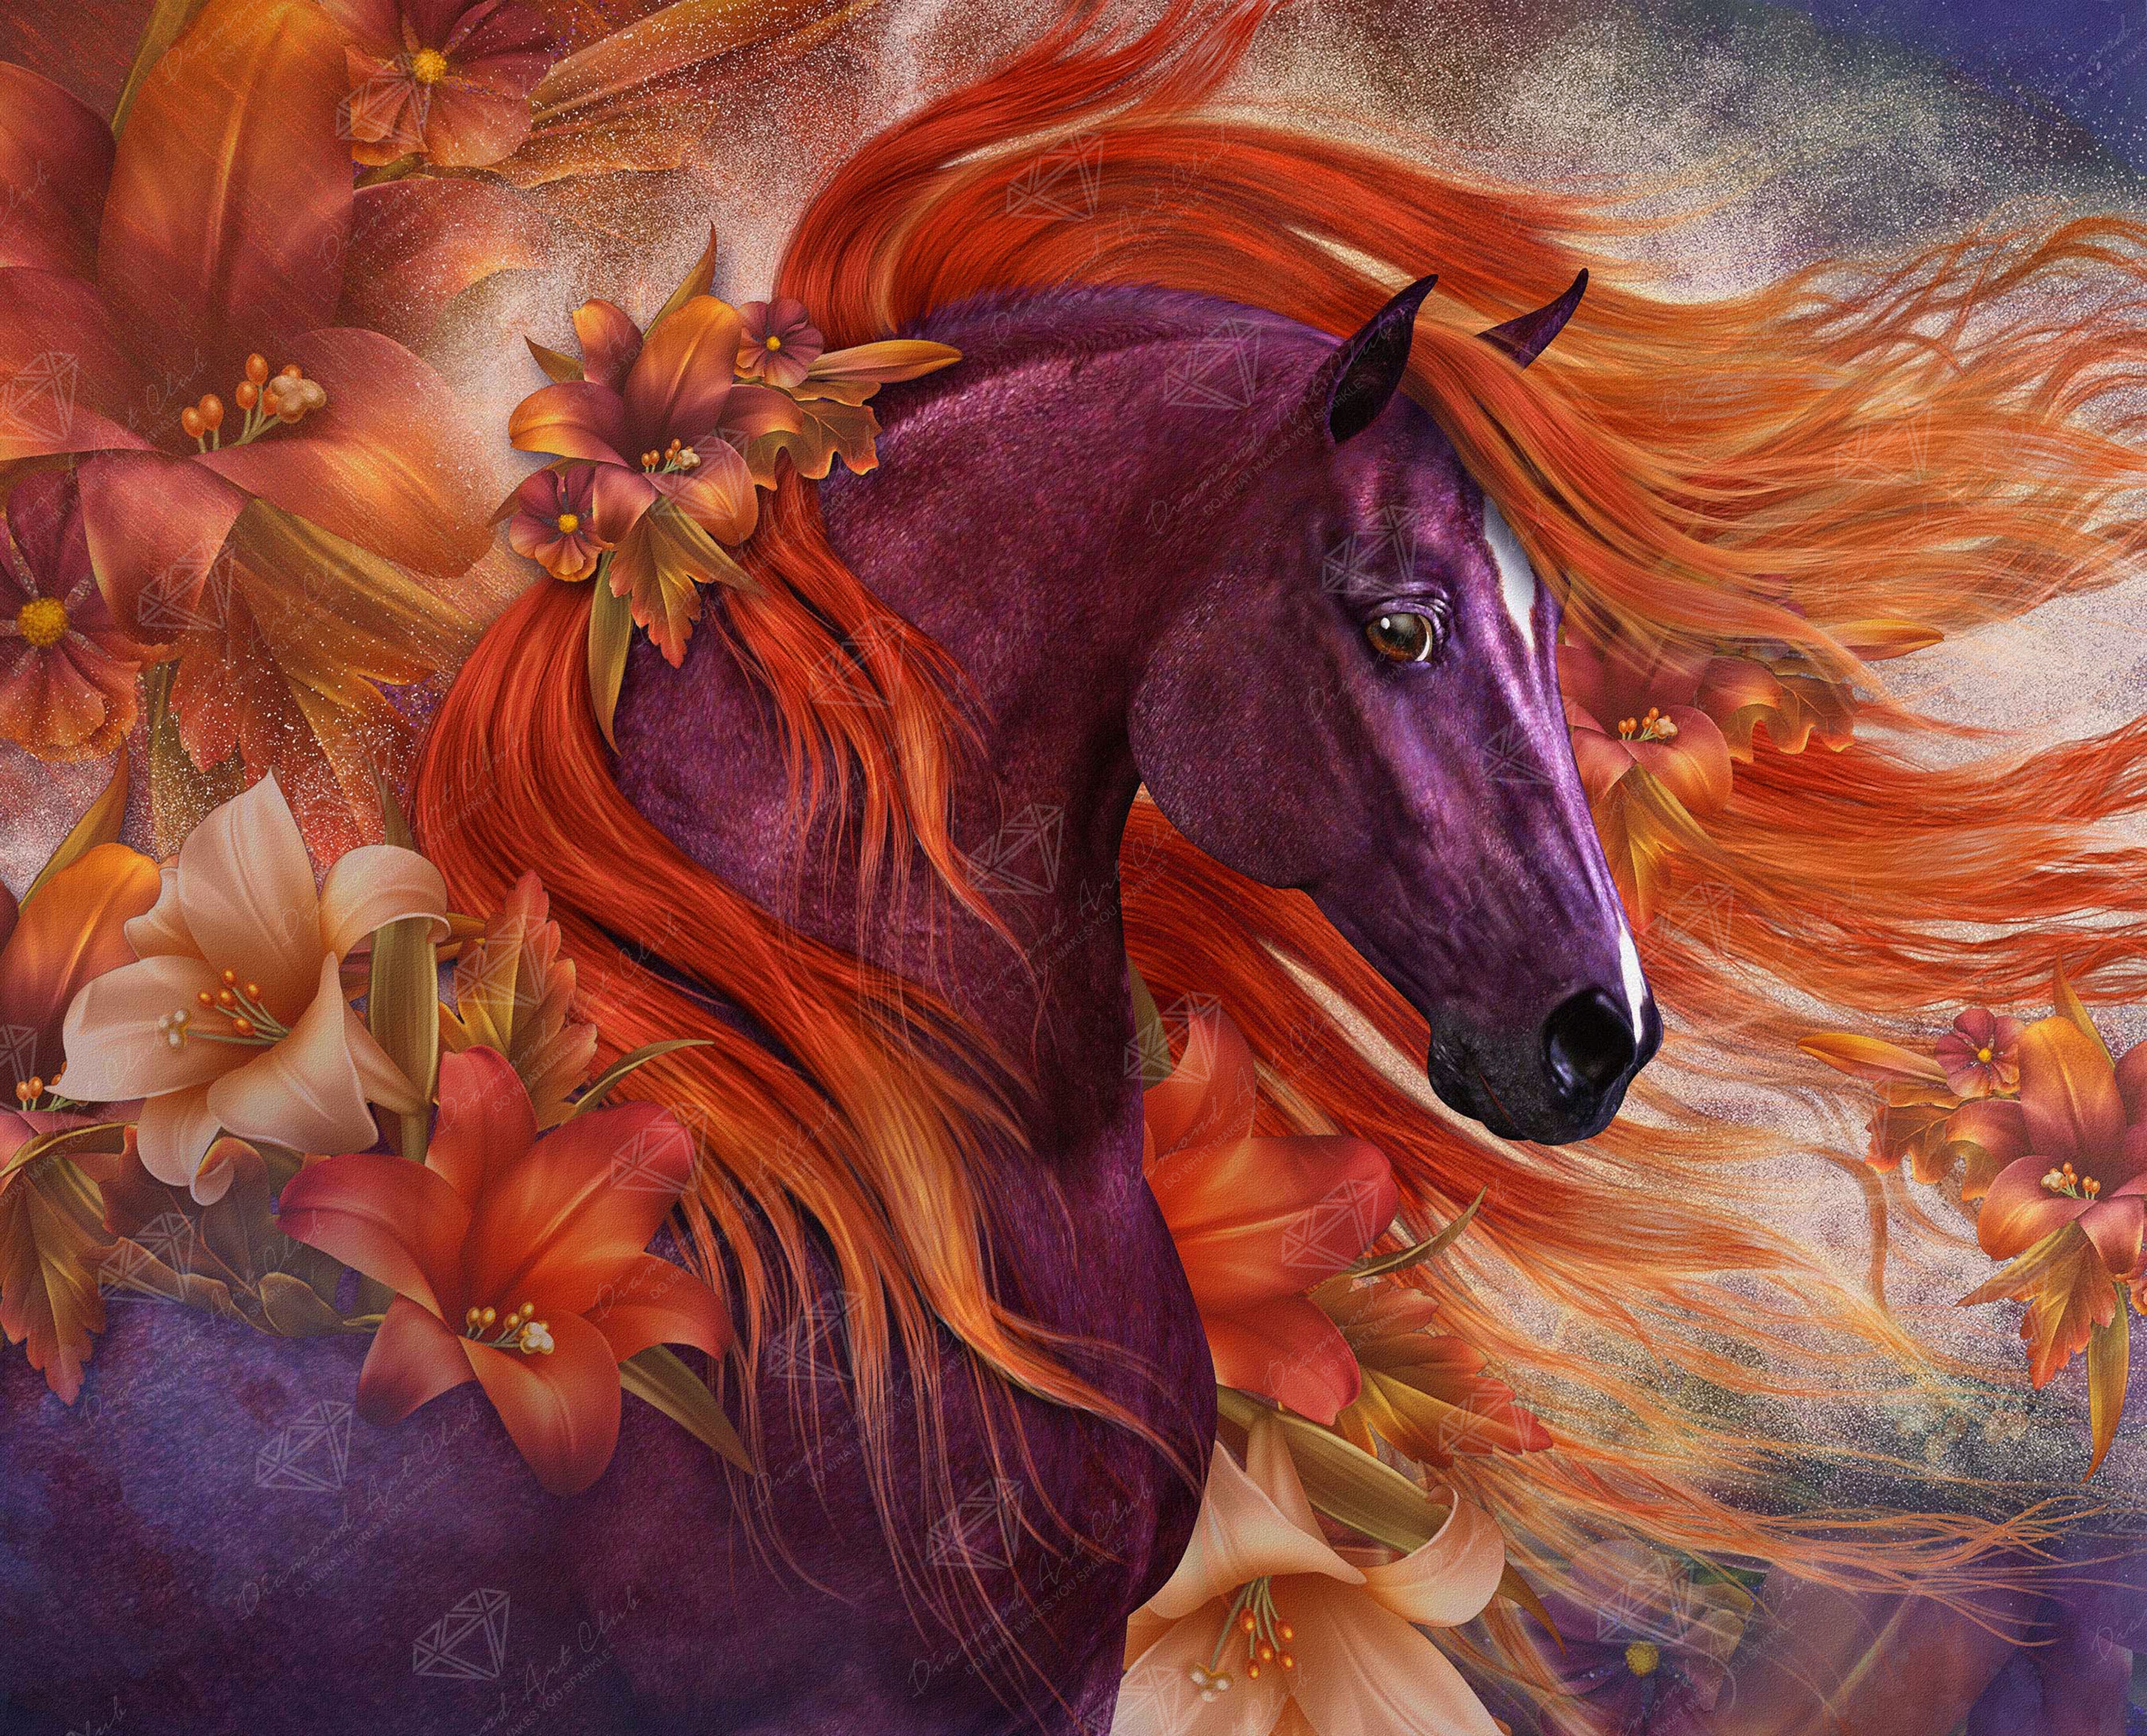 Diamond Painting Horse In Autumn Scene – Diamonds Wizard